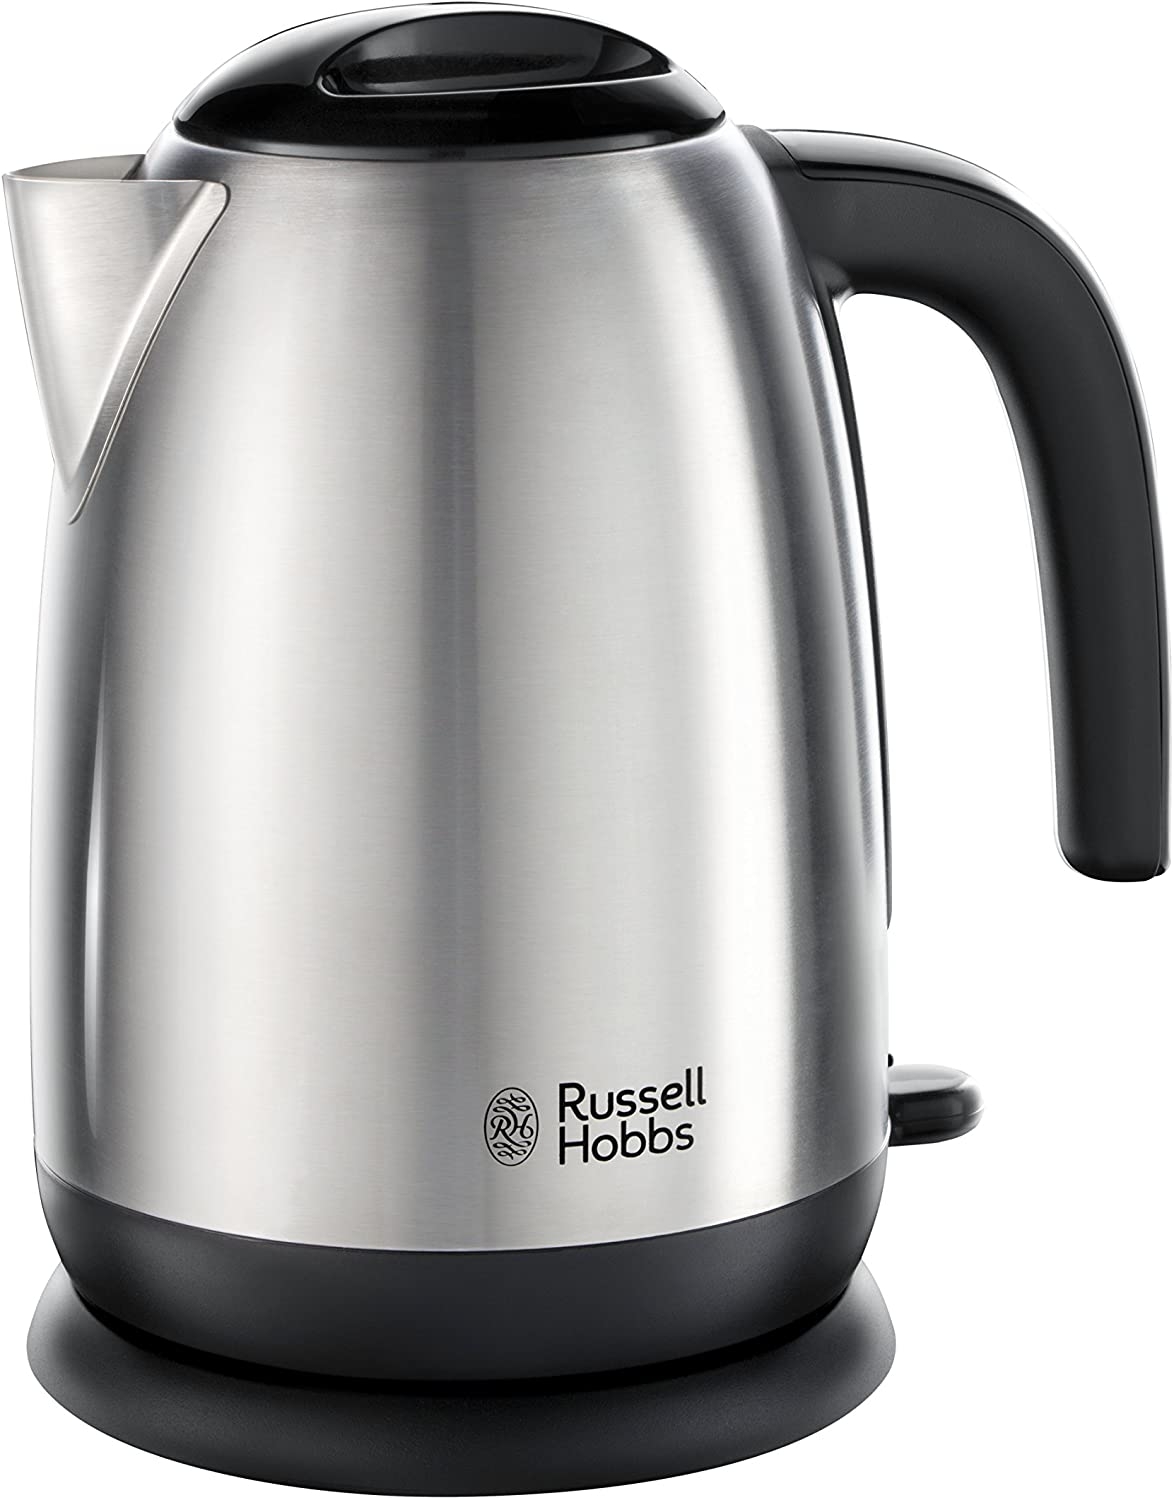 Russell Hobbs 23910 Rapid Boil Kettle Brushed Steel